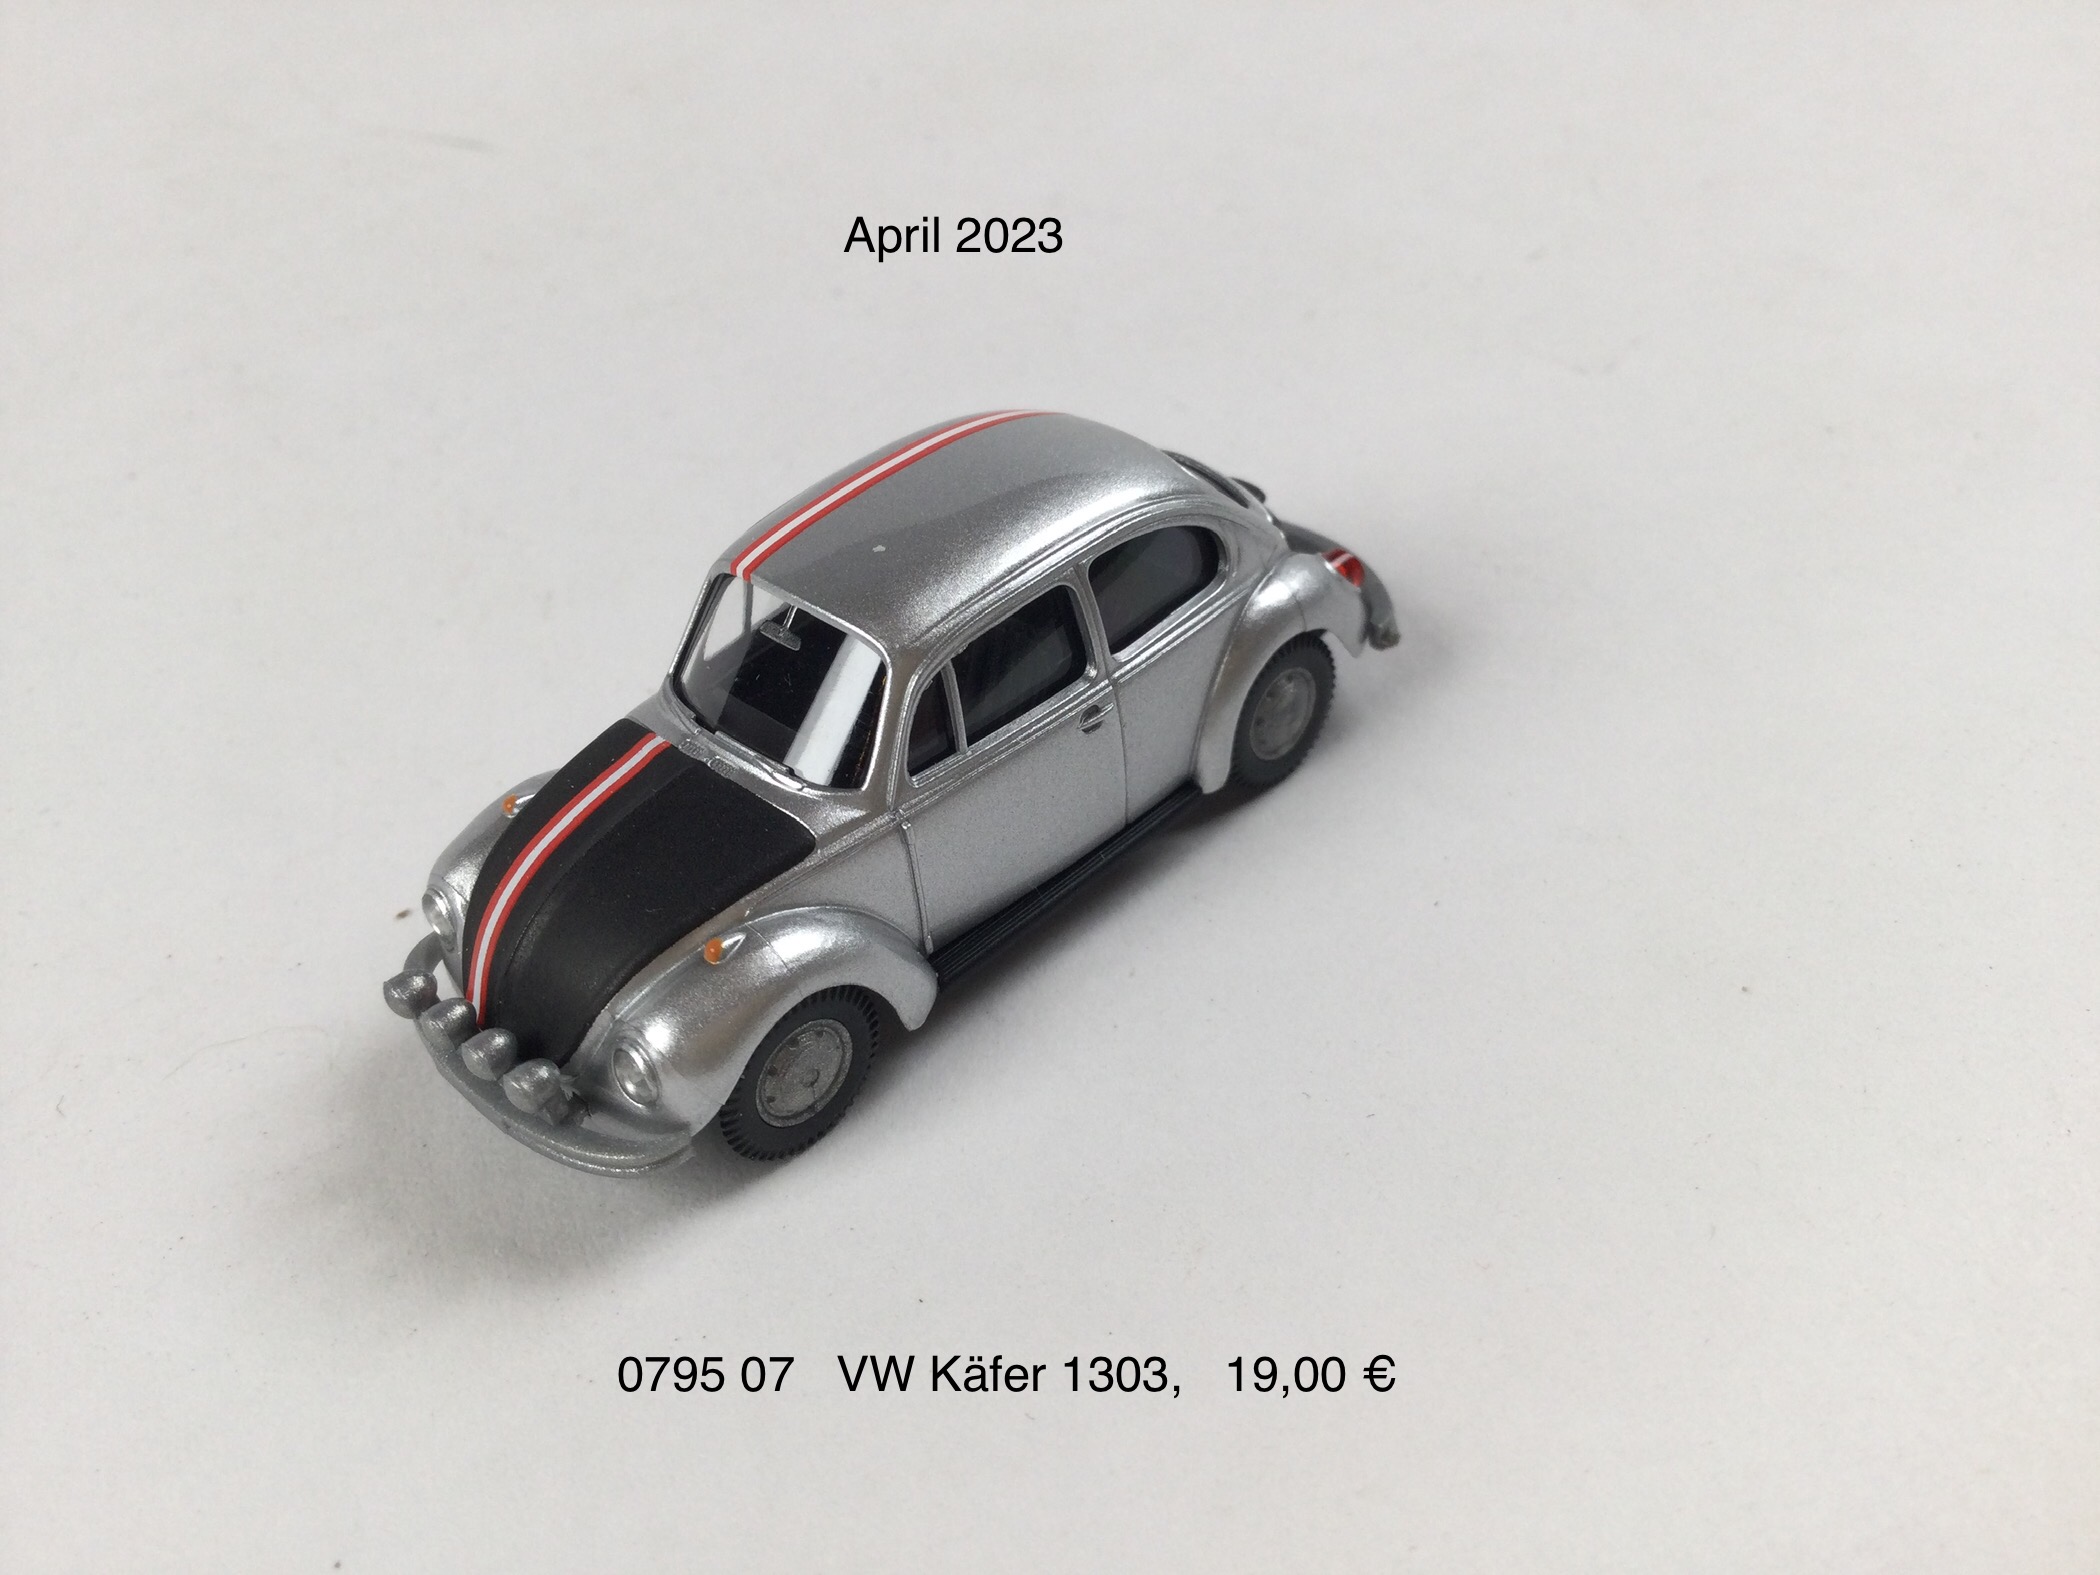 VW Käfer 1303 "Salzburg"